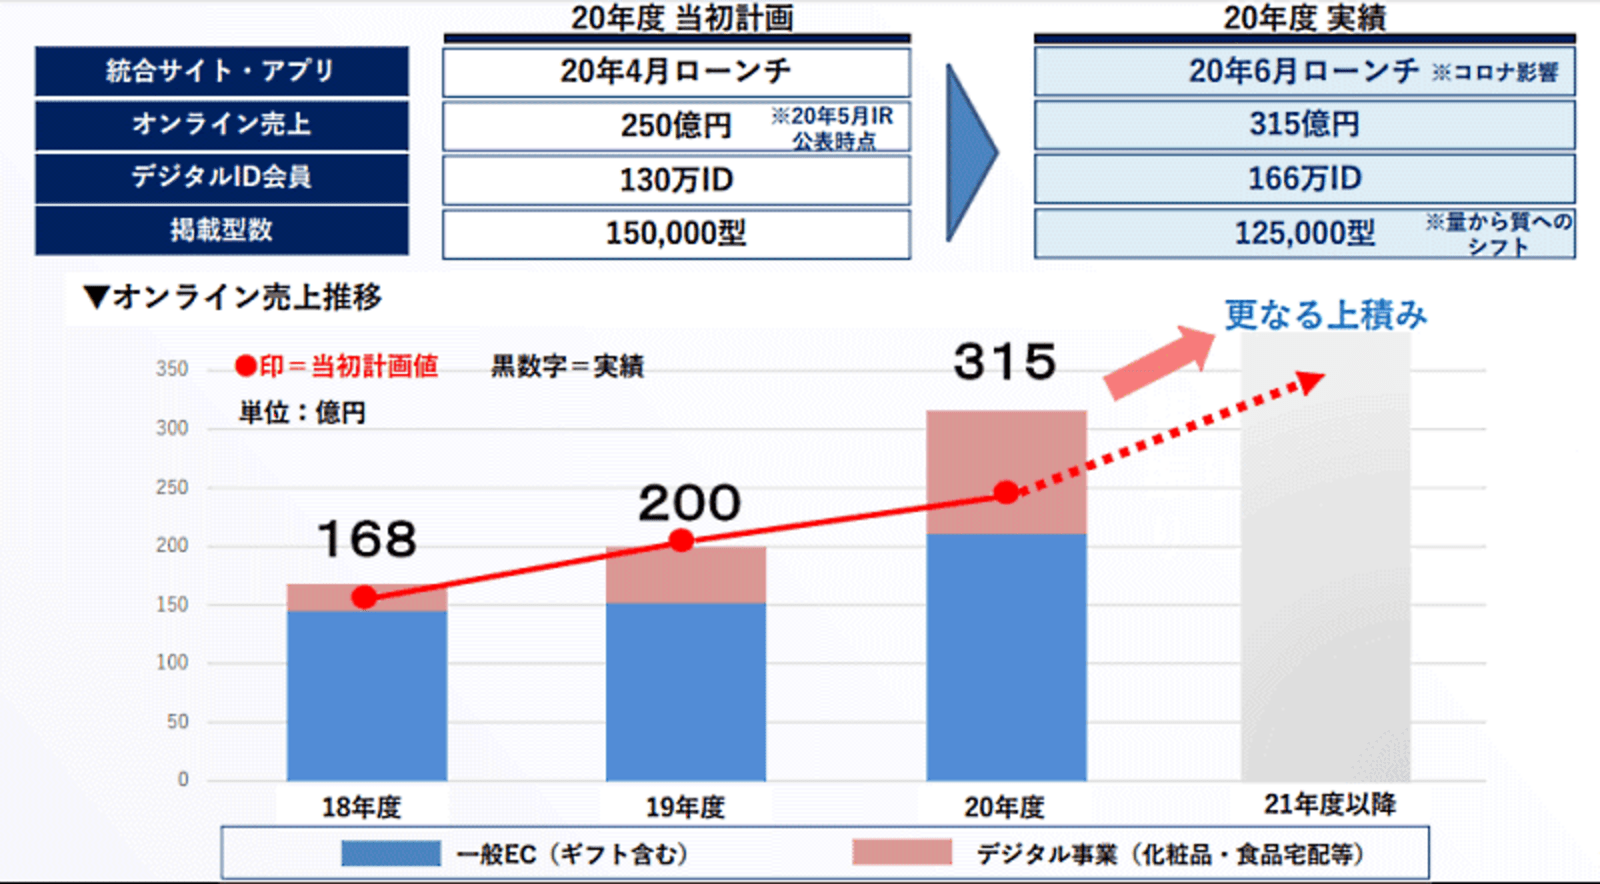 三越伊勢丹HDのEC売上高は57%増の315億円、化粧品や食品定期宅配も伸長 